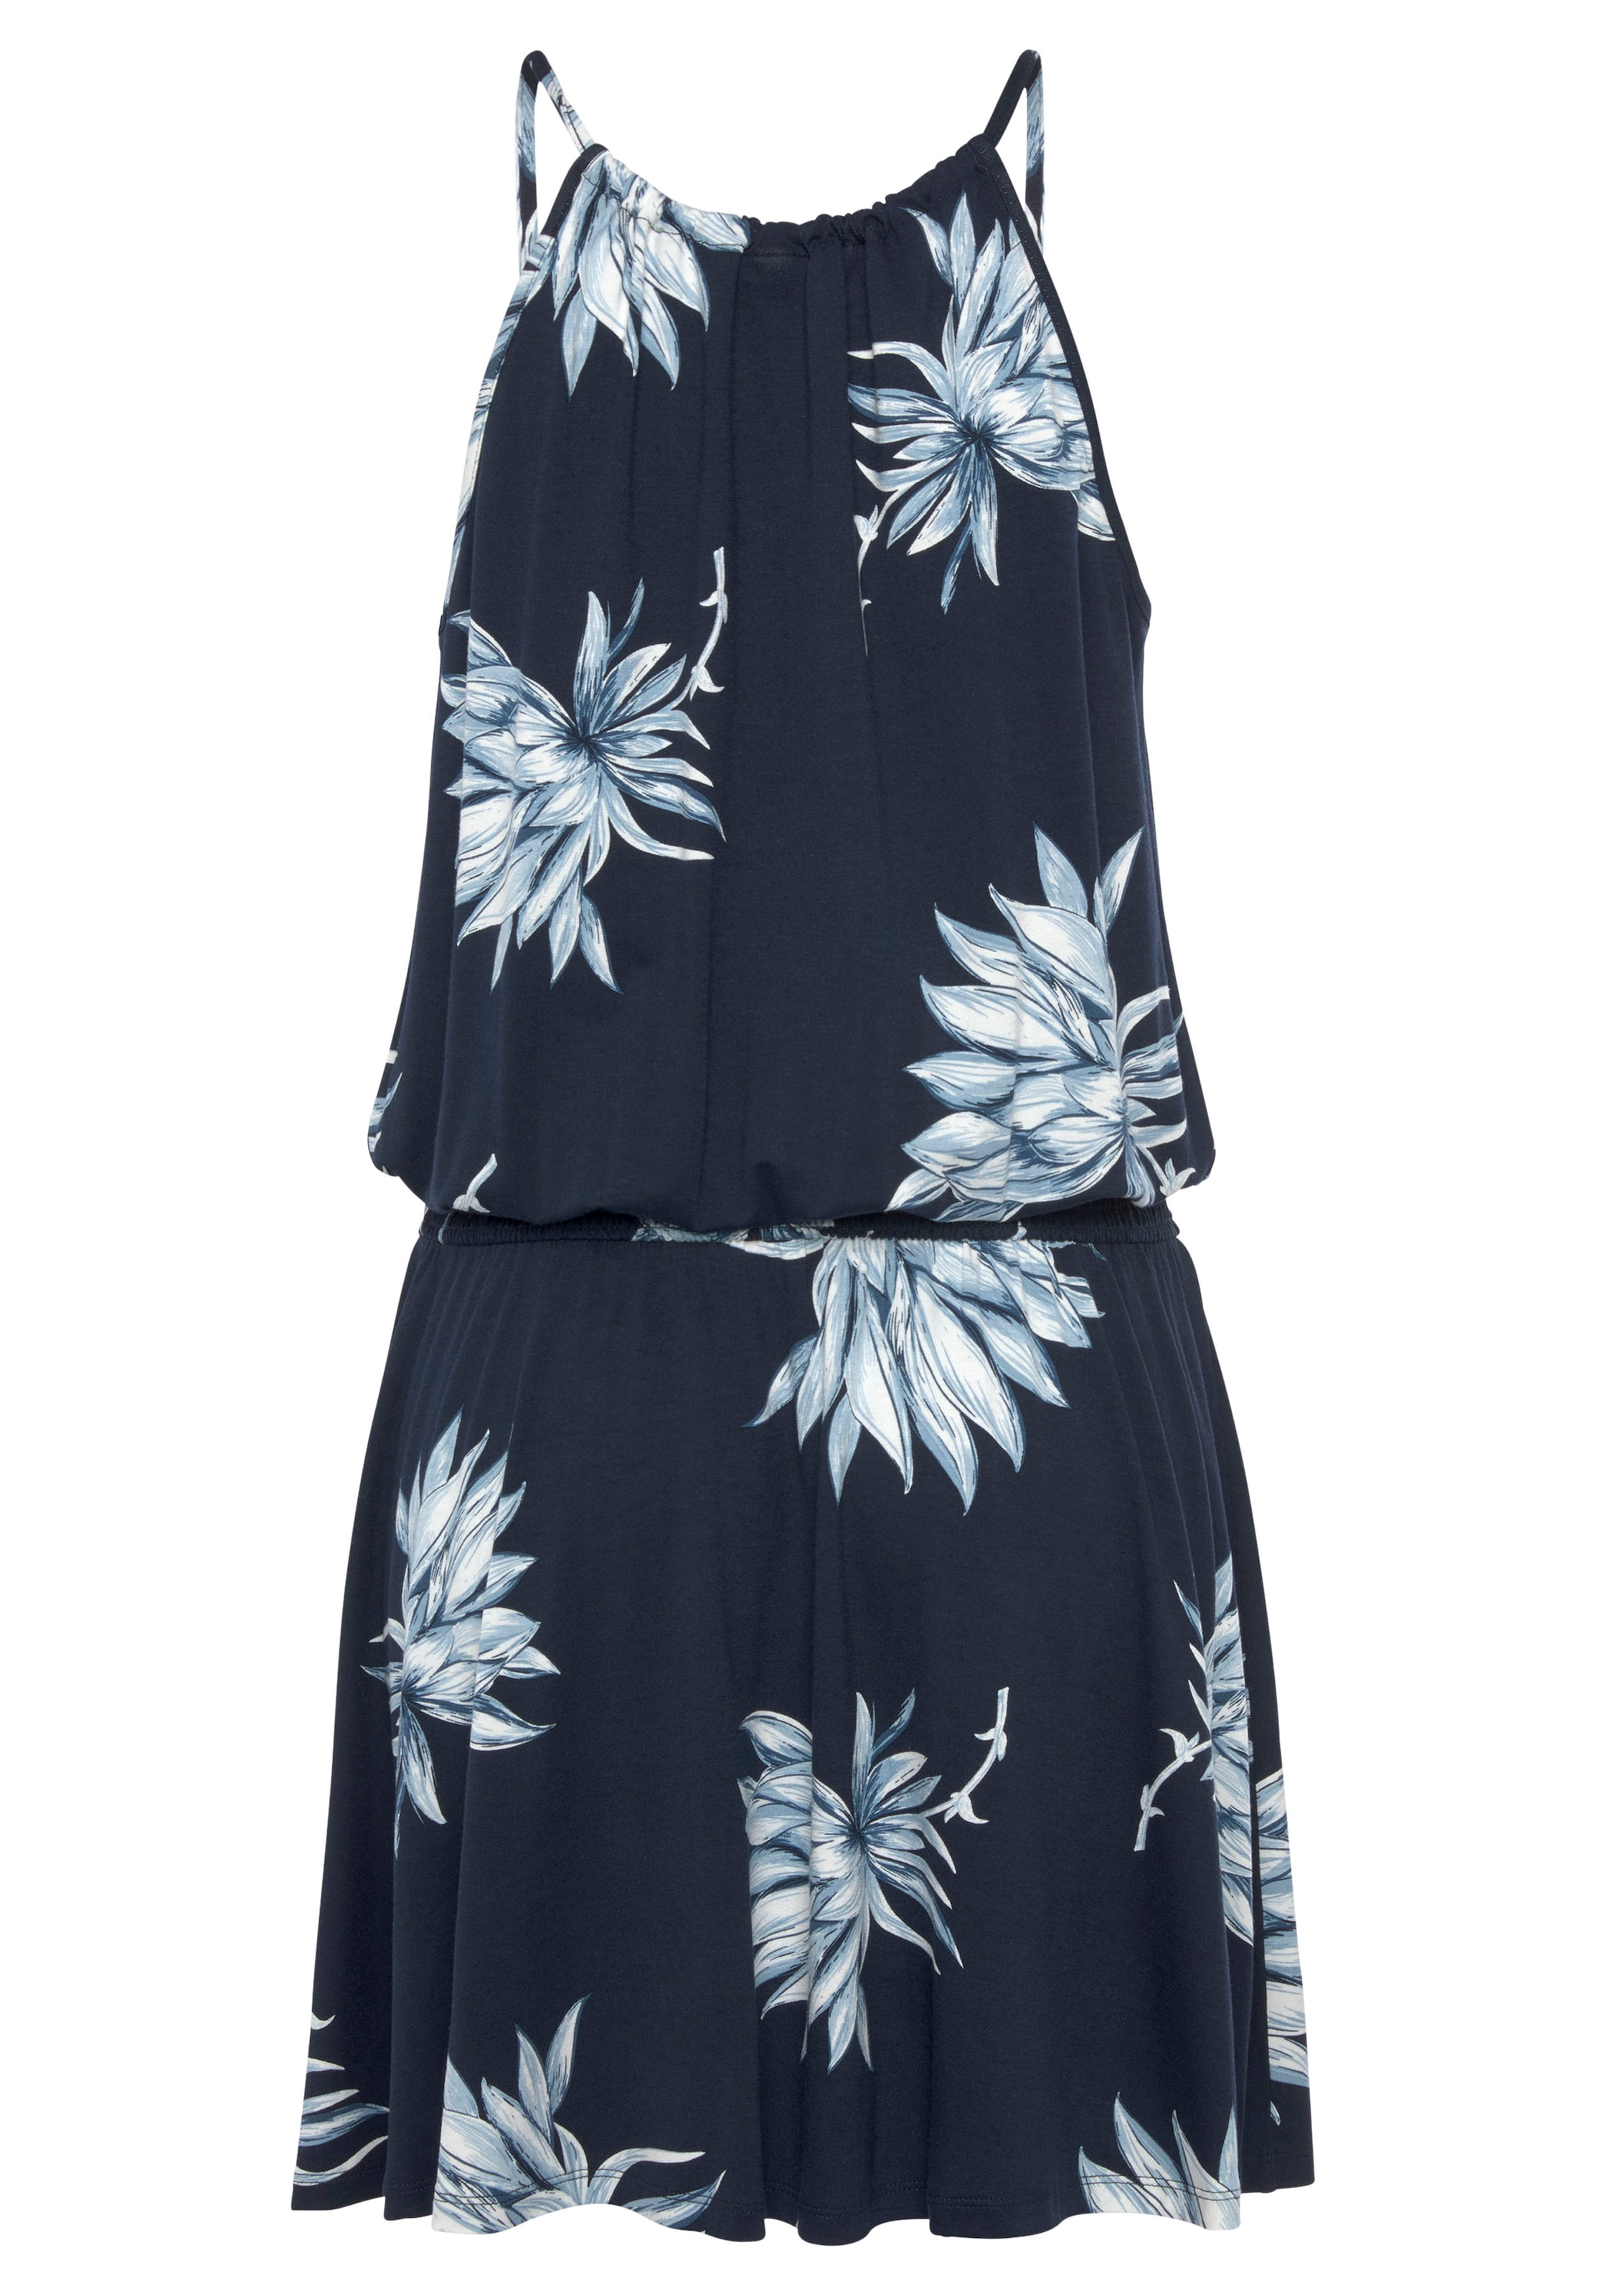 LASCANA Jerseykleid, mit Blumendruck und Raffung in der Taille, Sommerkleid, Strandkleid